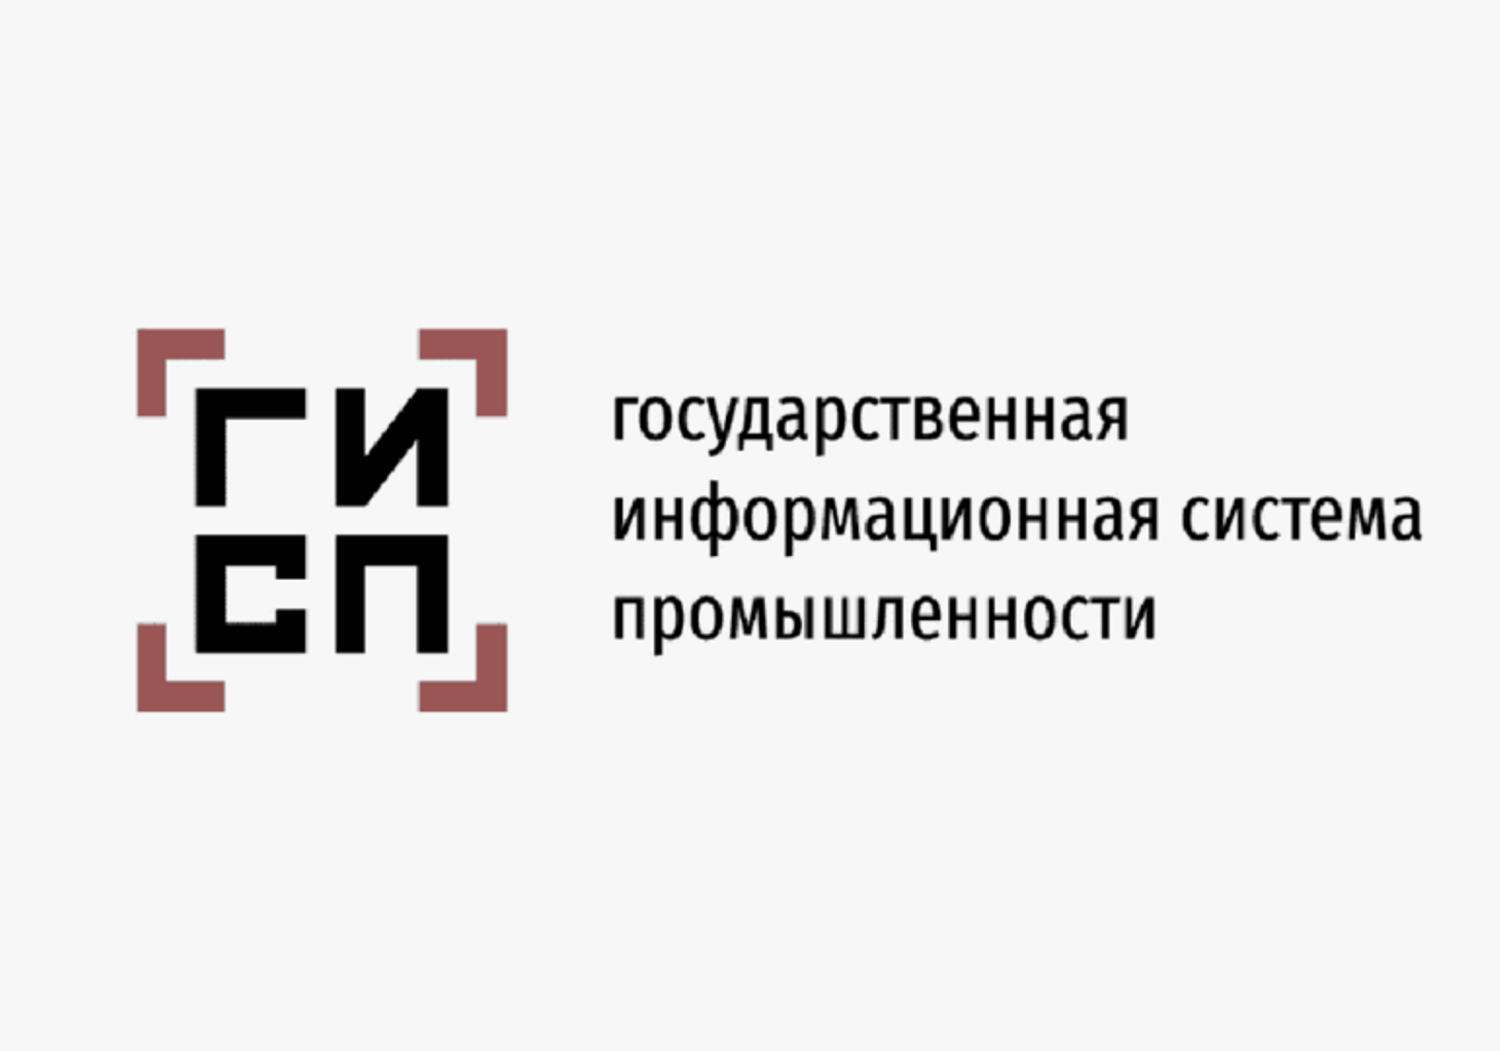 Сайте gisp gov ru. Государственная информационная система промышленности (ГИСП). ГИСП Минпромторг. ГИСП лого. Минпромторг логотип.